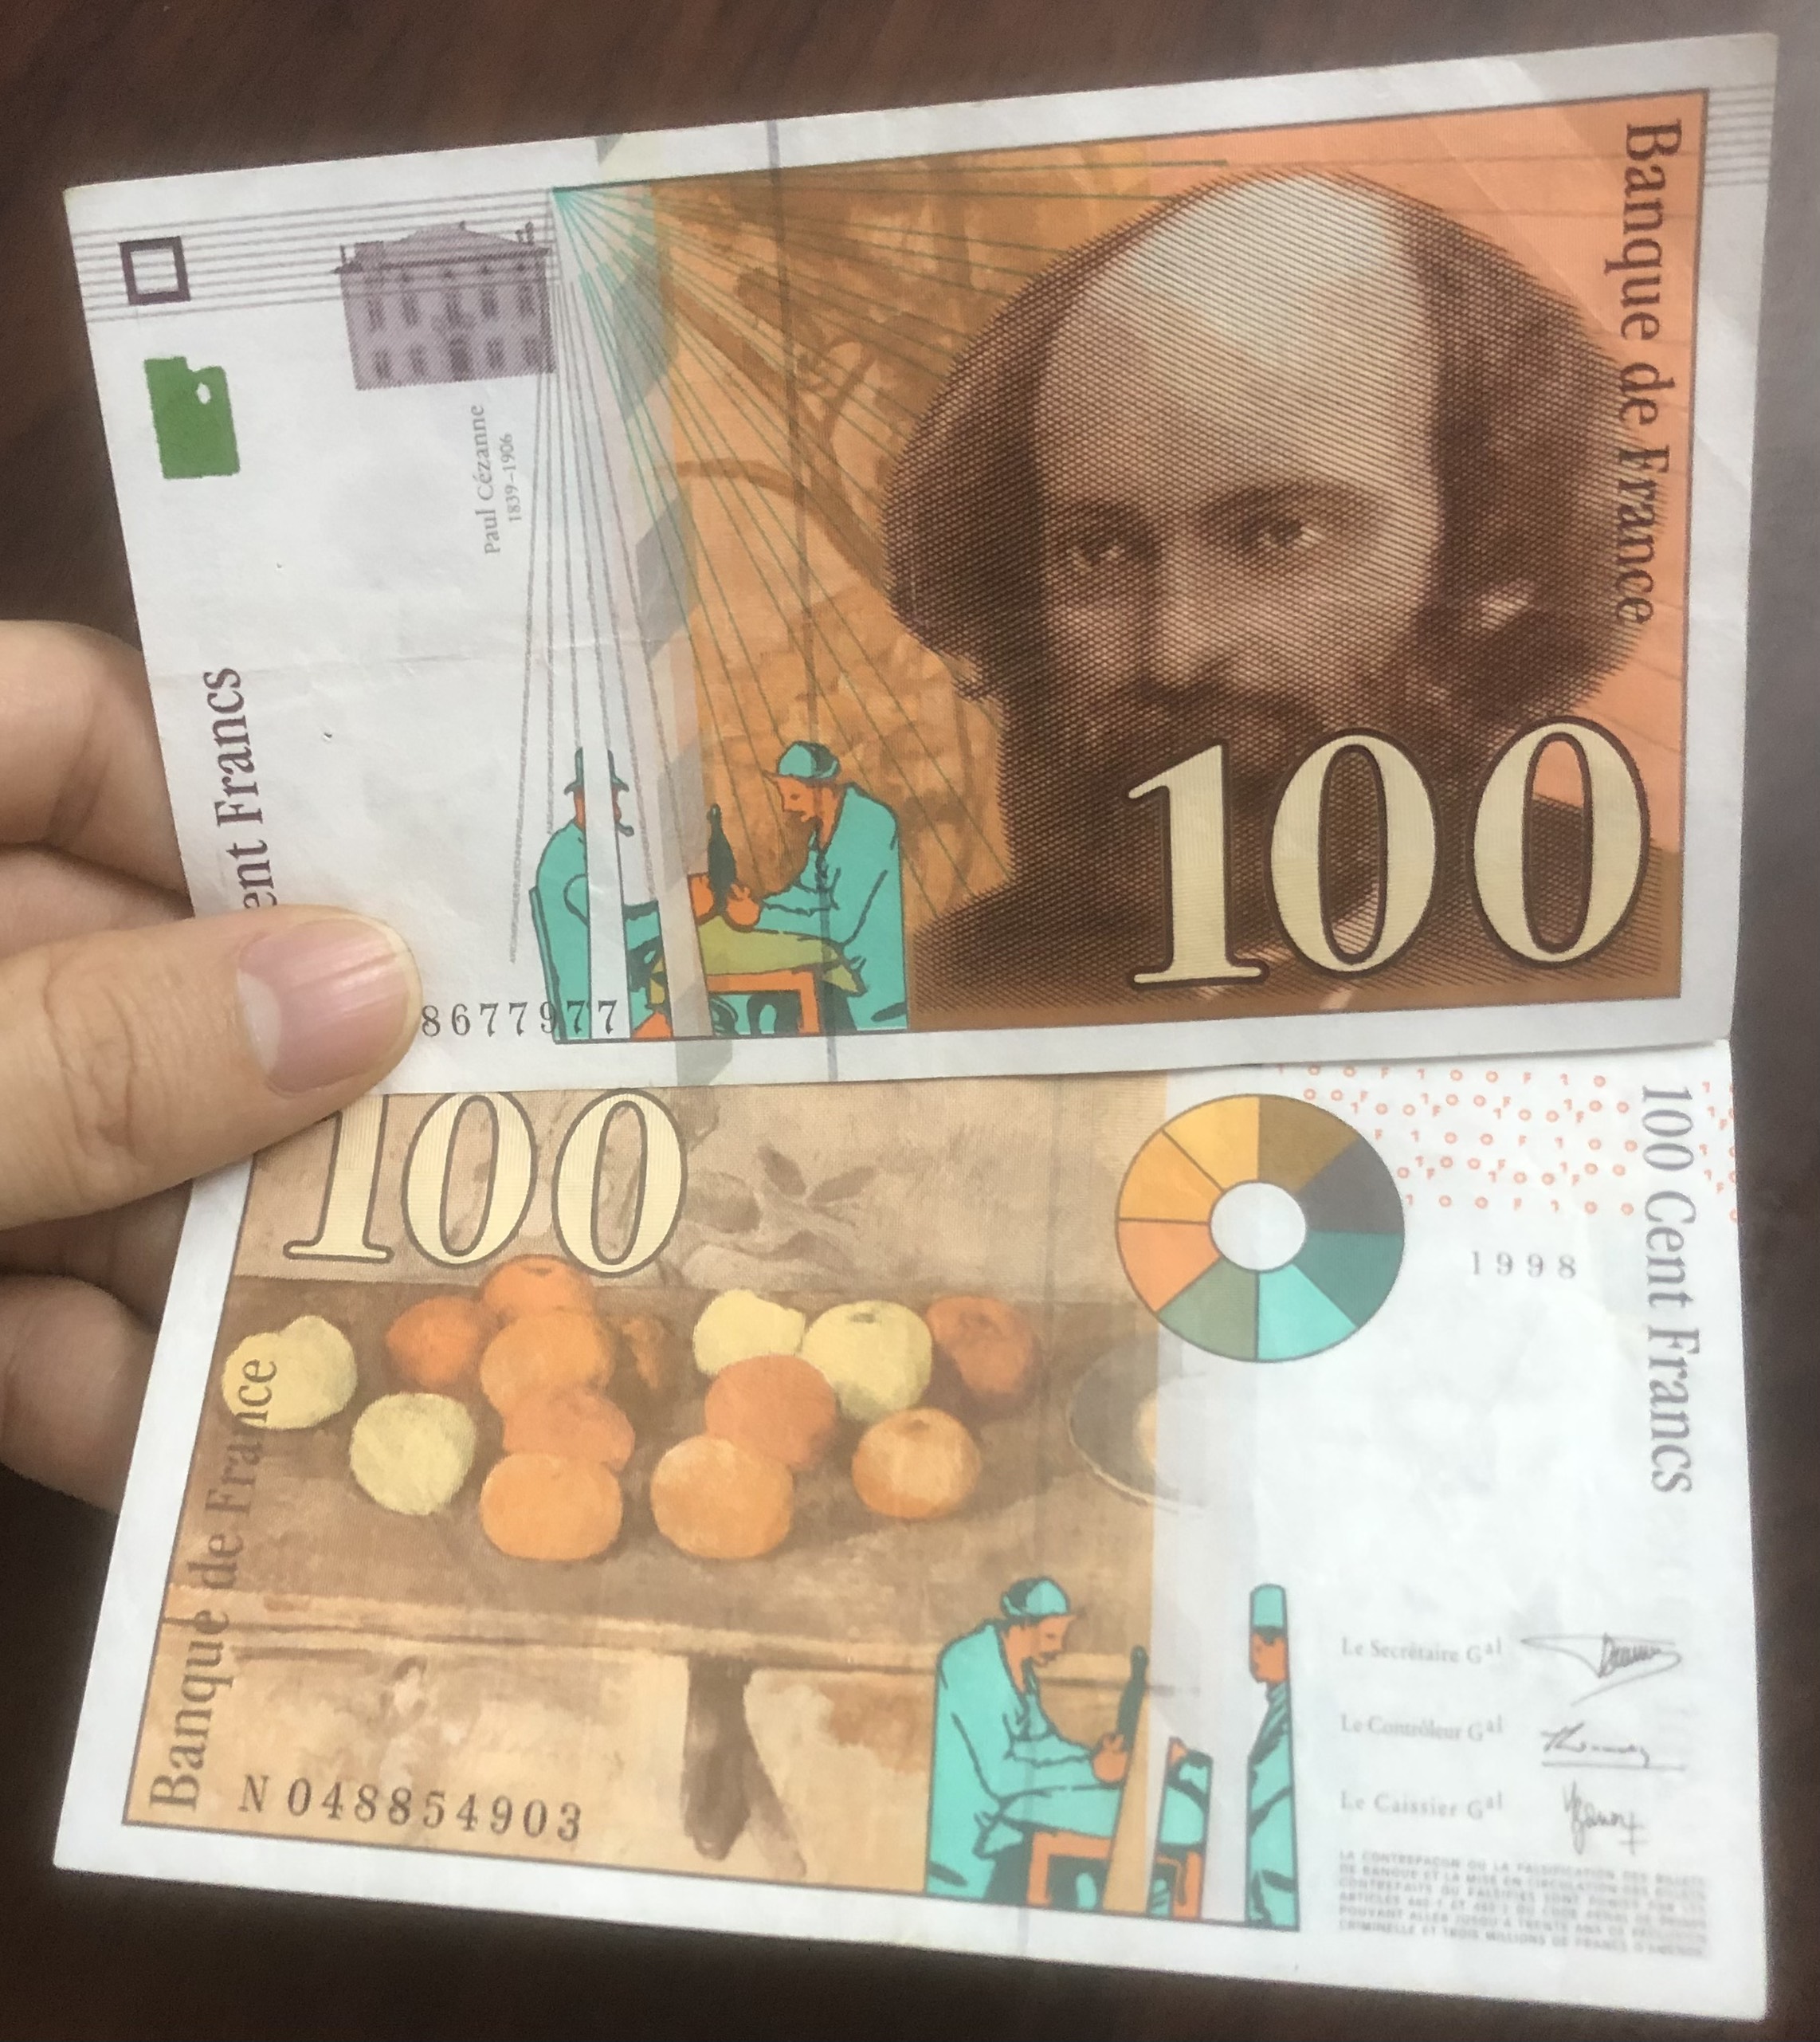 Tiền Pháp 100 francs 199x thòi kỳ trước Euro, tặng kèm phơi nilong bảo quản